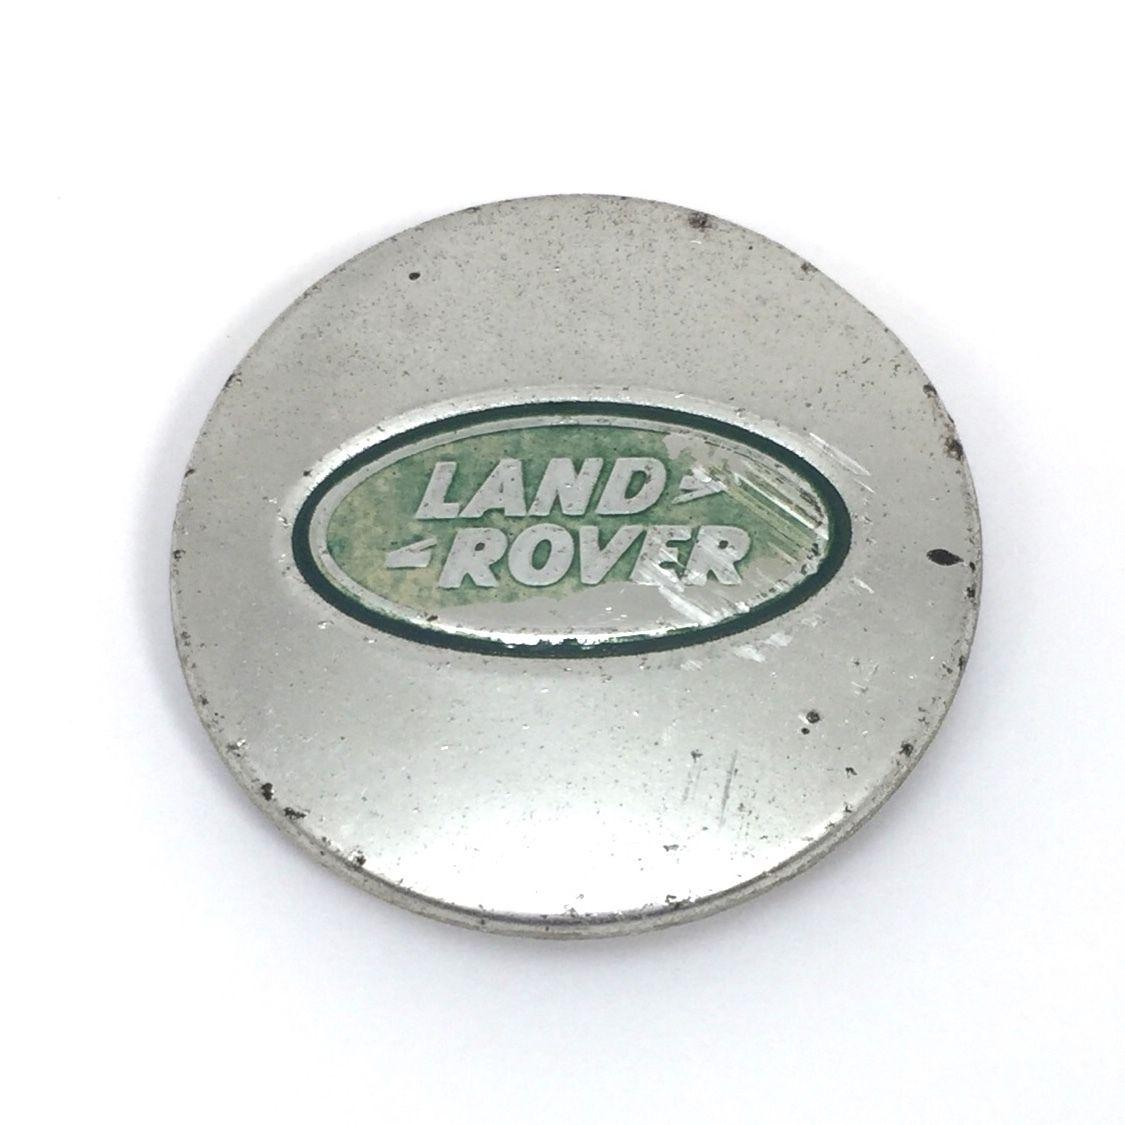 Chrome and Green Logo - Land Rover Range Rover Center Wheel Cap Chrome w/Green Logo ...